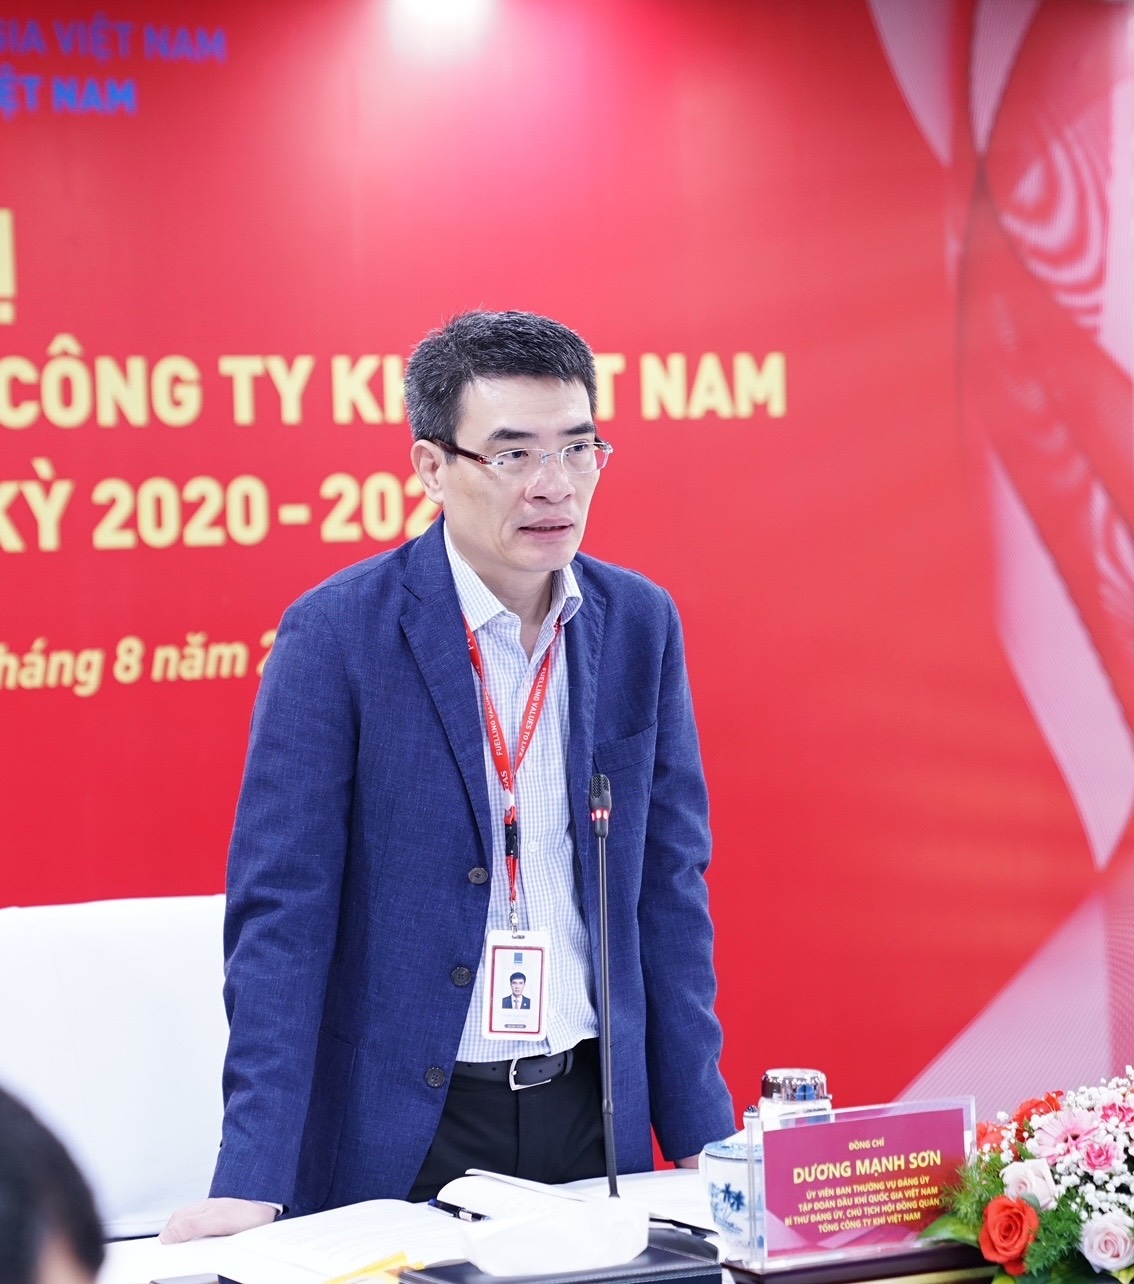 Đồng chí Dương Mạnh Sơn - Bí thư Đảng ủy, Chủ tịch HĐQT PV GAS kết luận Hội nghị